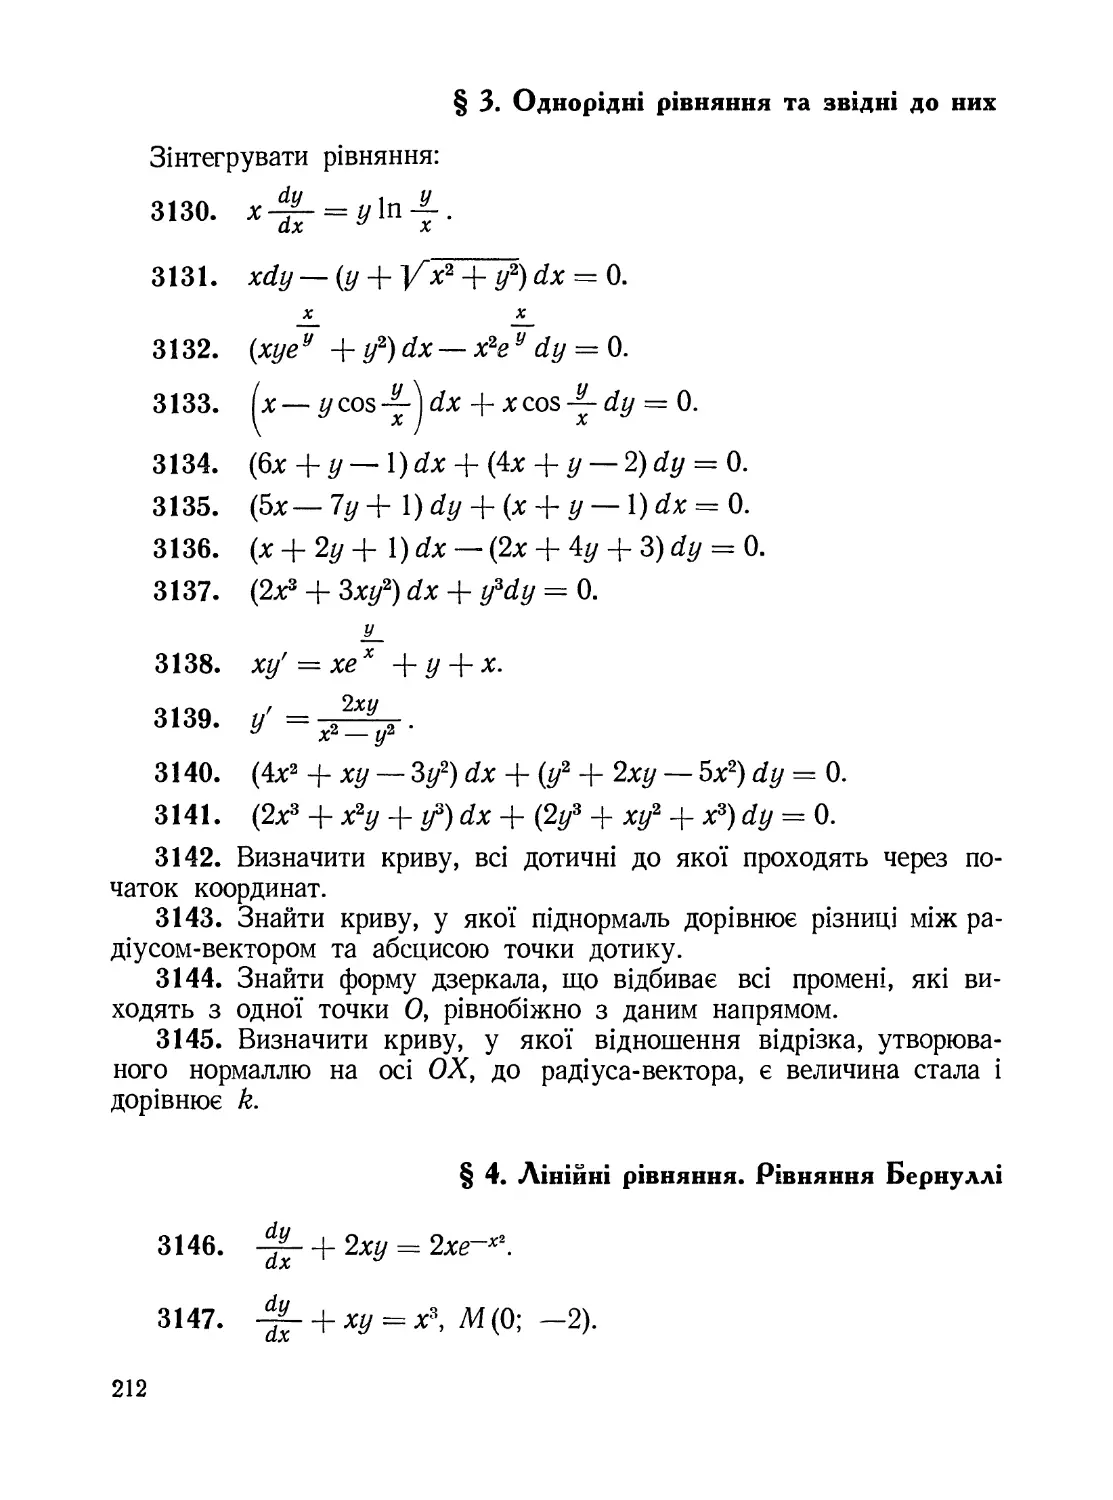 §3. Однорідні рівняння та звідні до них
§4. Лінійні рівняння. Рівняння Бернуллі